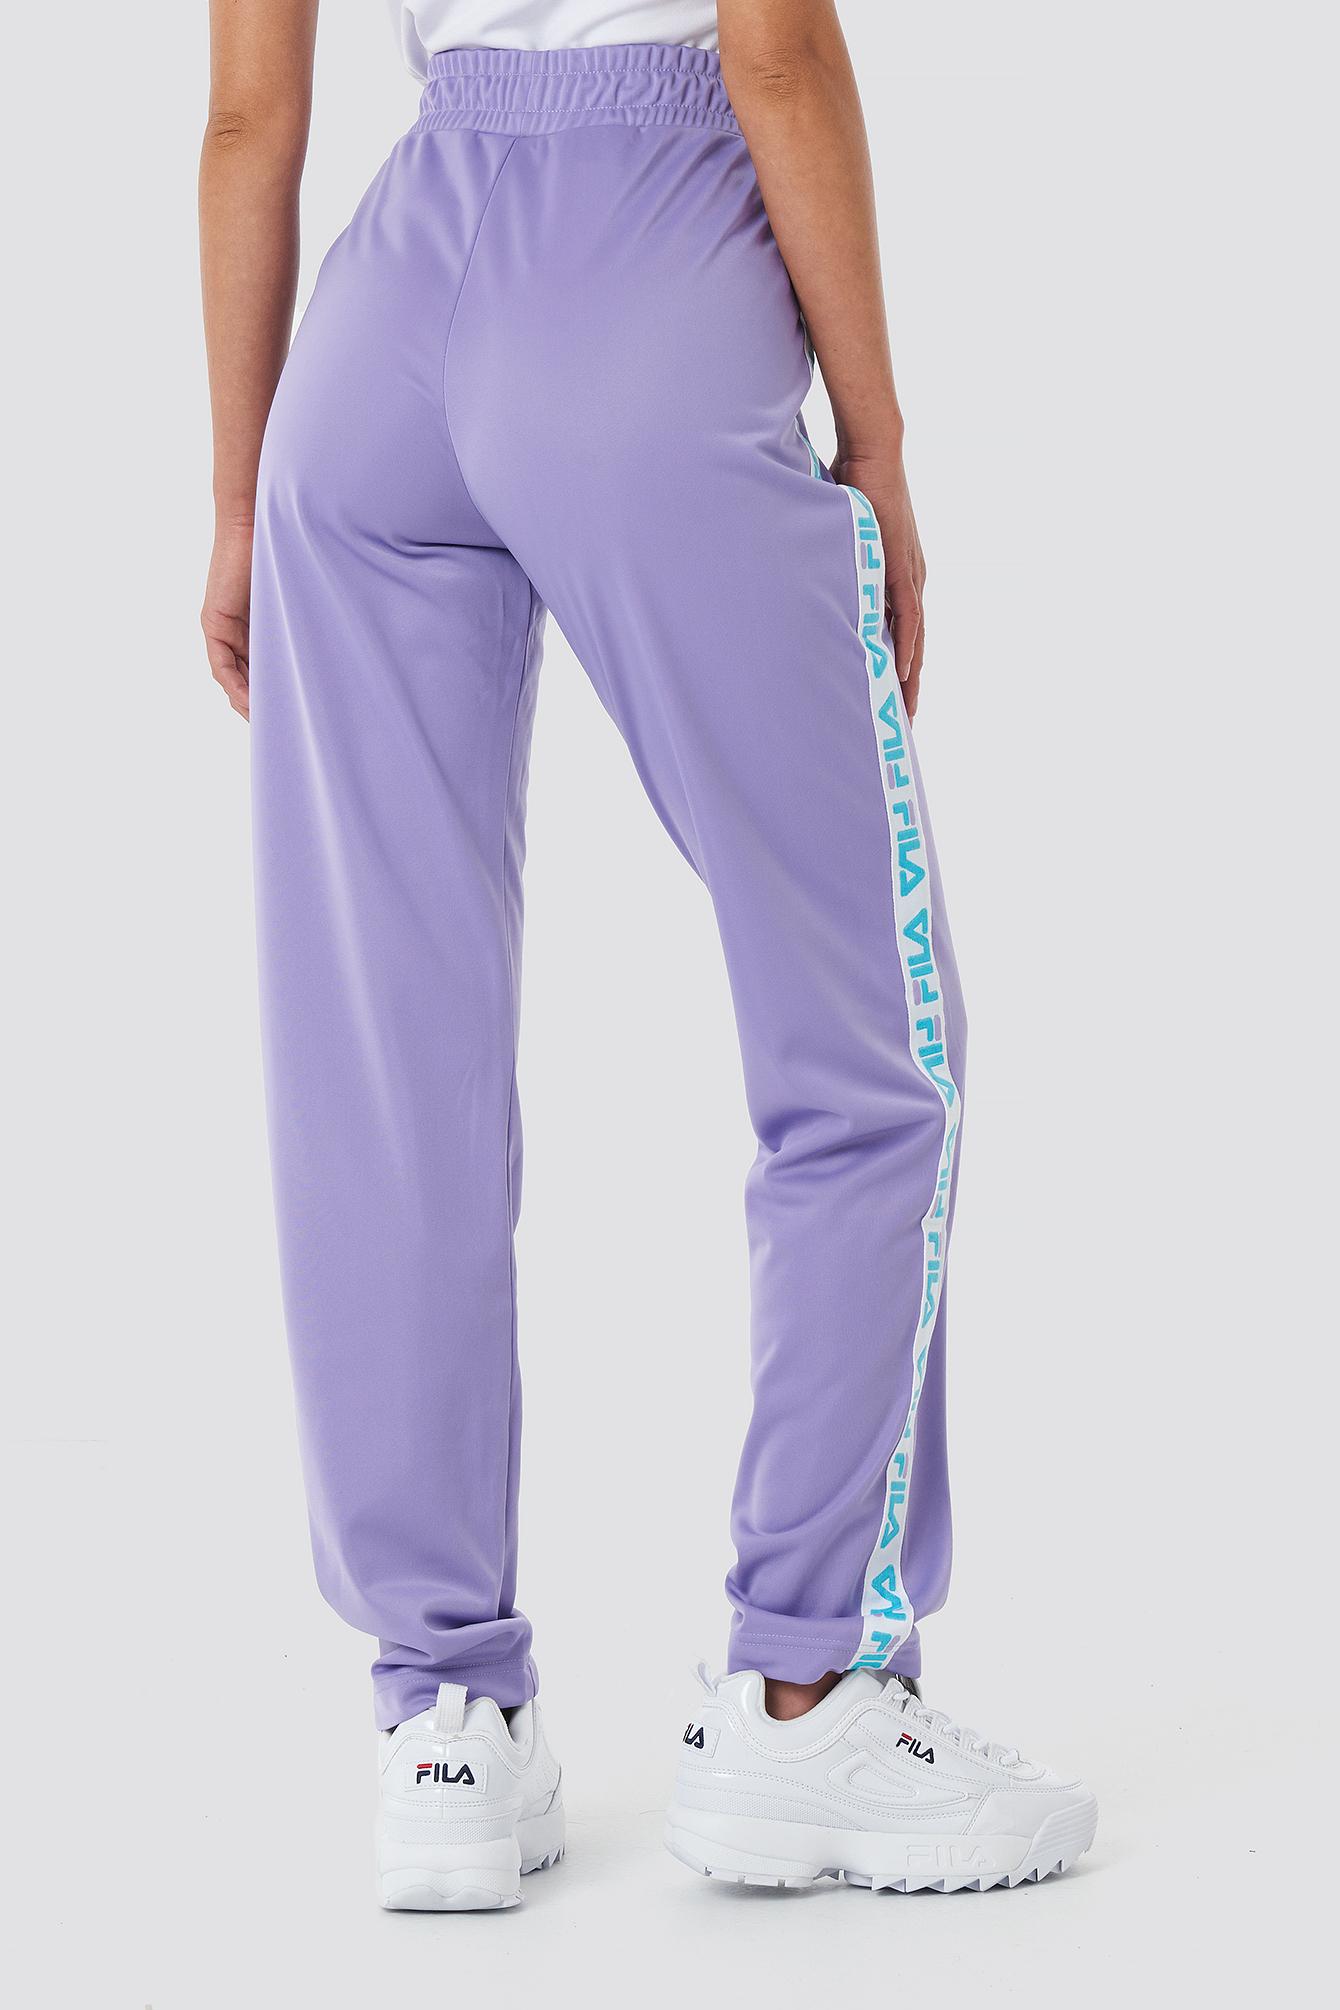 Fila Synthetic Women Strap Track Pants Purple - Lyst